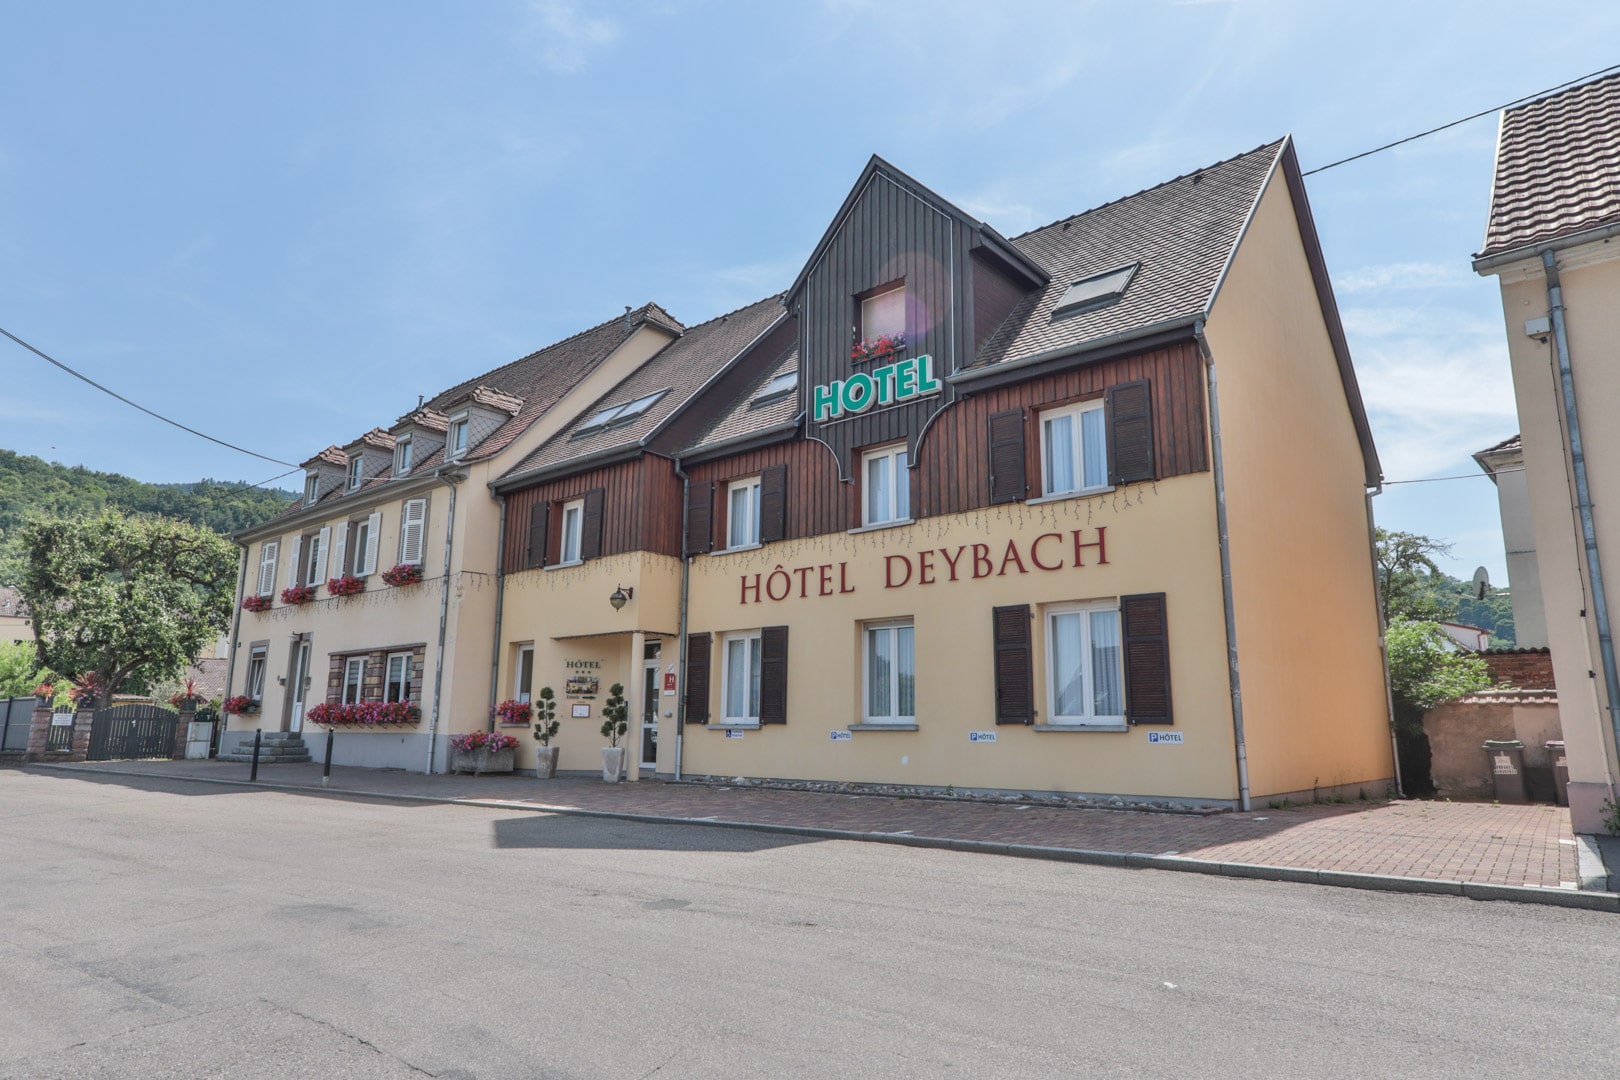 HOTELDEYBACH1 Copyright Office de Tourisme de la Vallee de Munster - OUVERT !!